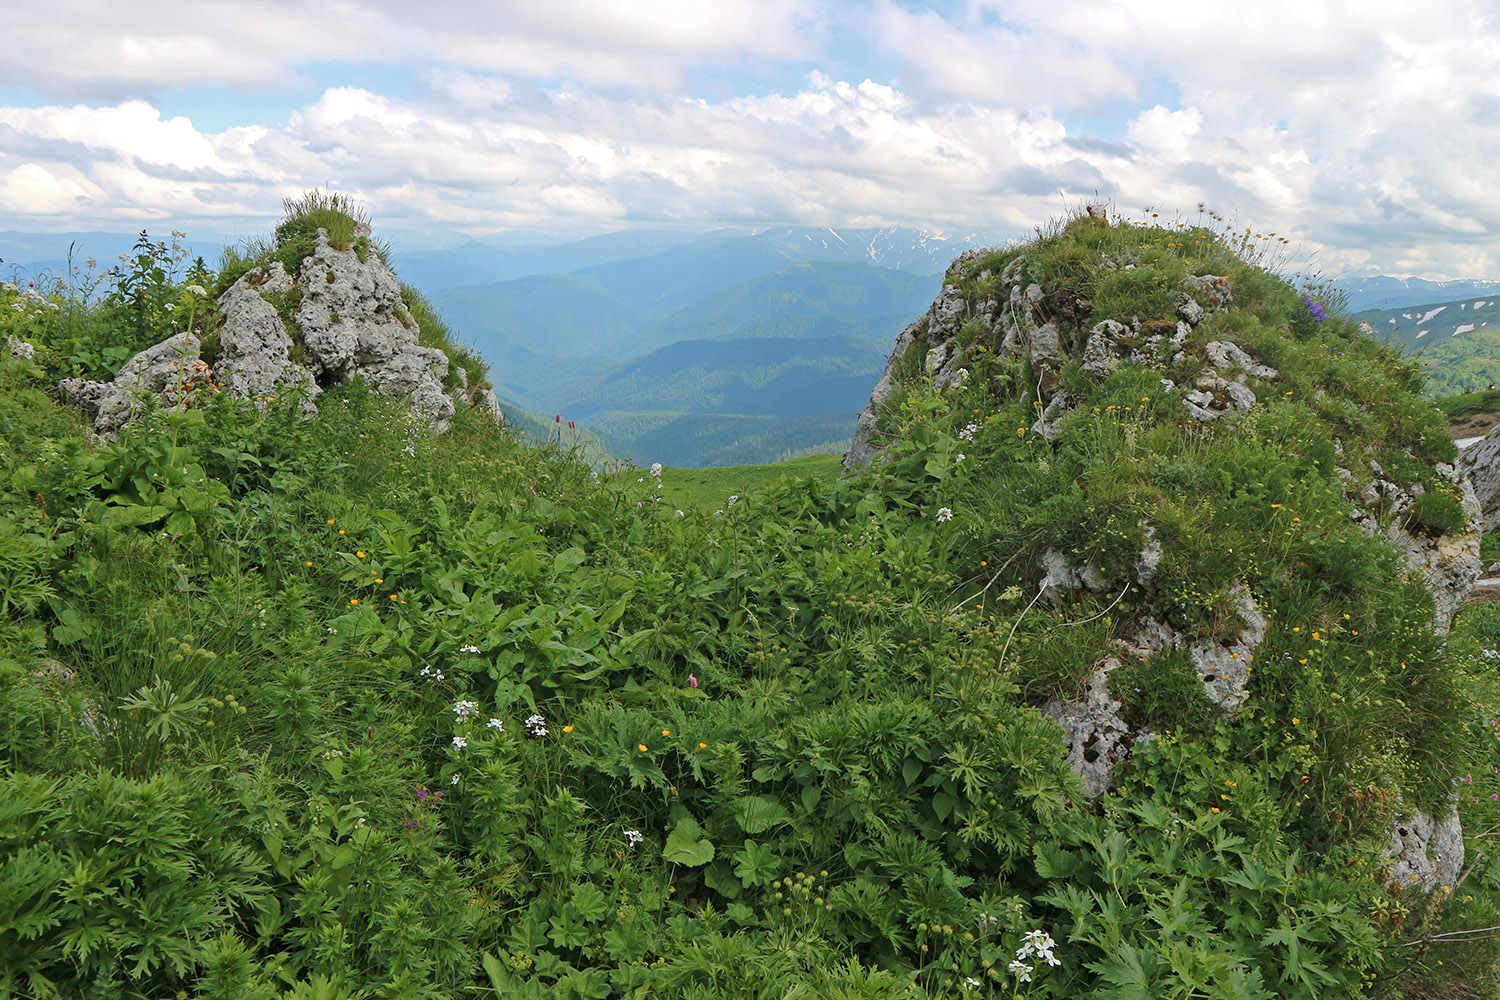 Пик Татьяны, image of landscape/habitat.